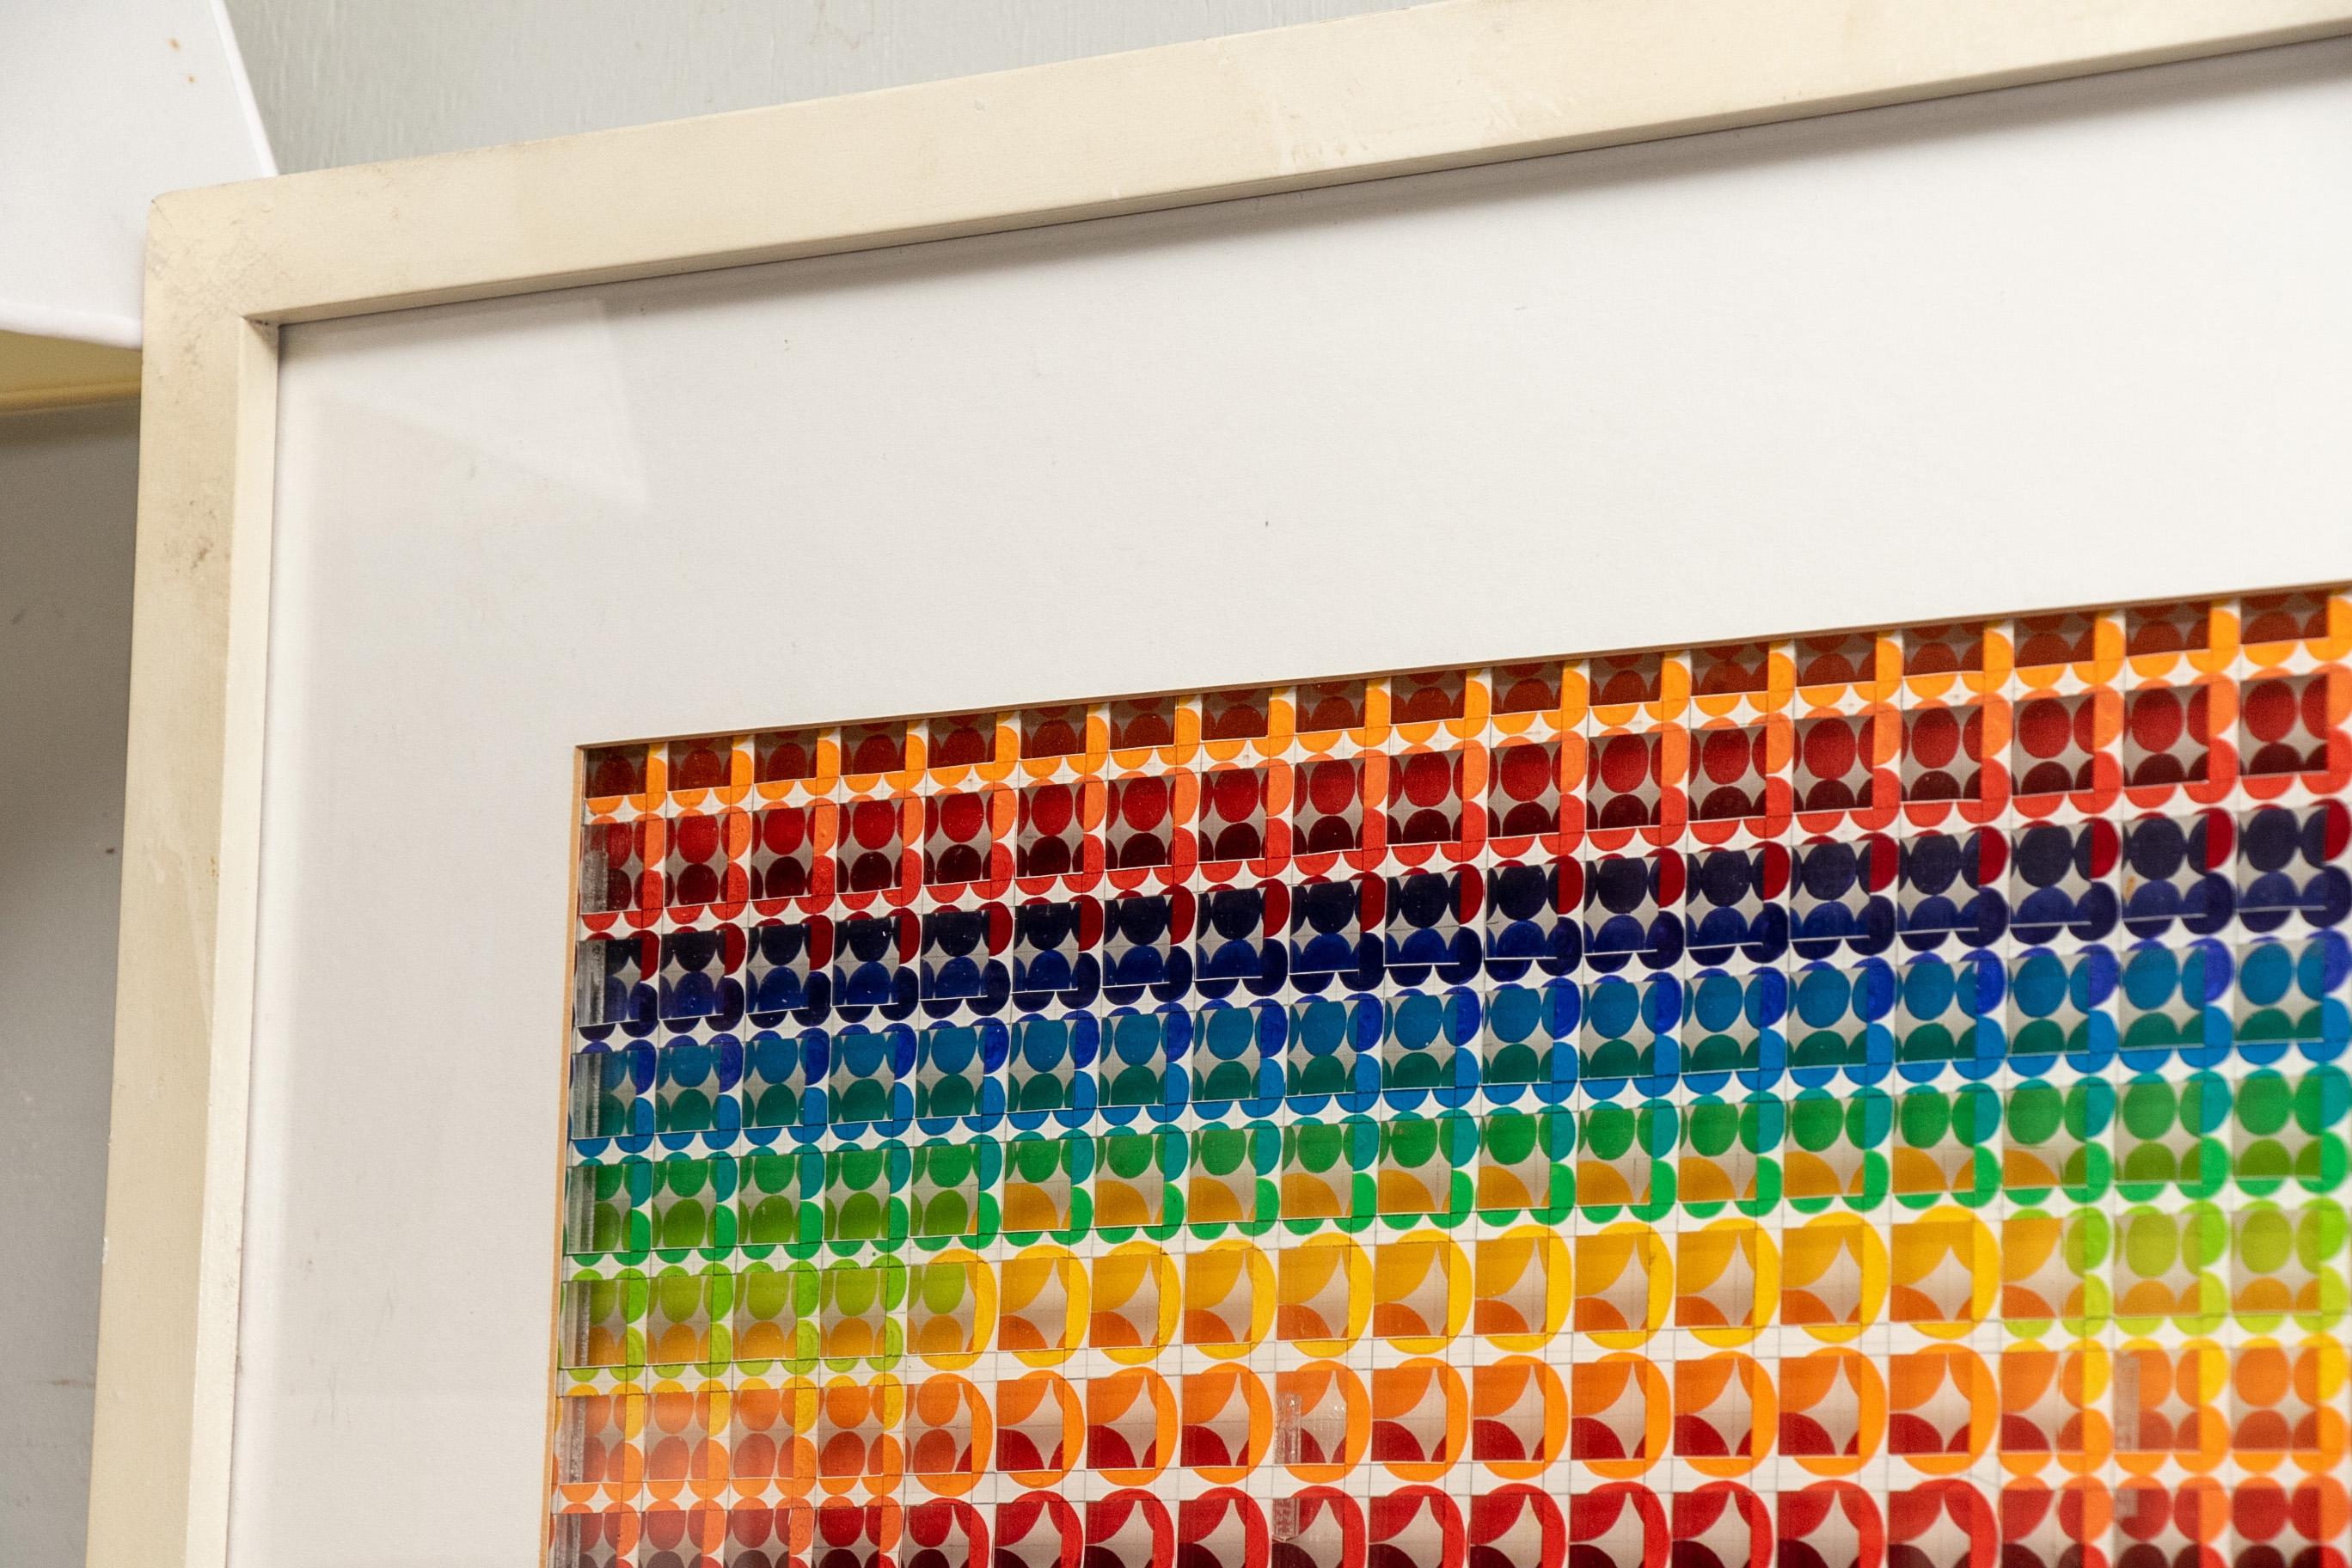 Œuvre d'art moderne en trois dimensions de Shirley Lazarus Toran, techniques mixtes, cercles peints à l'acrylique sur des grilles au crayon sur papier. Composition stéréométrique à deux niveaux, le premier étant découpé et placé de manière